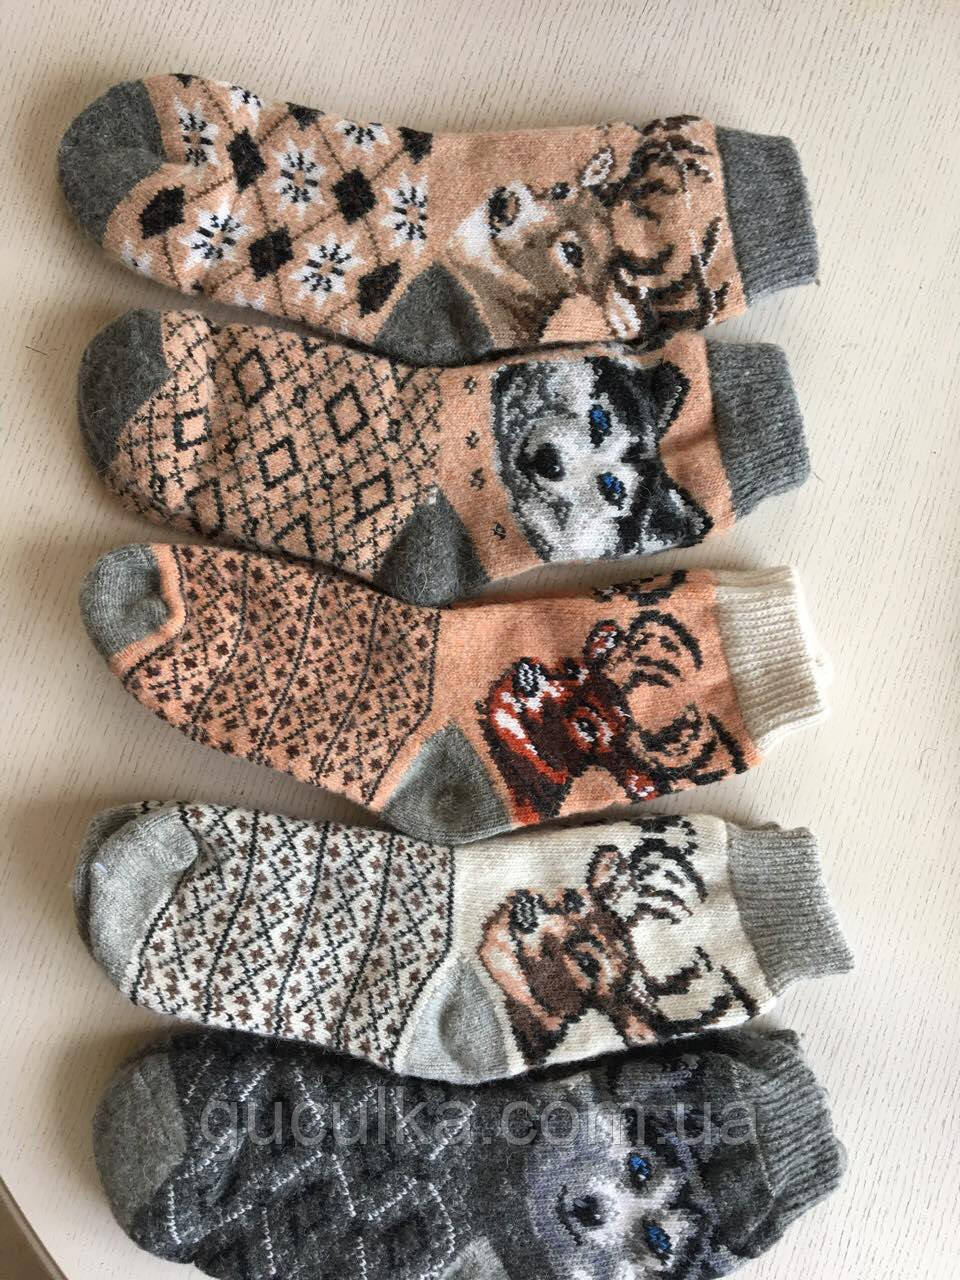 Шкарпетки чоловічі шерстяні з орнаментом та малюнком